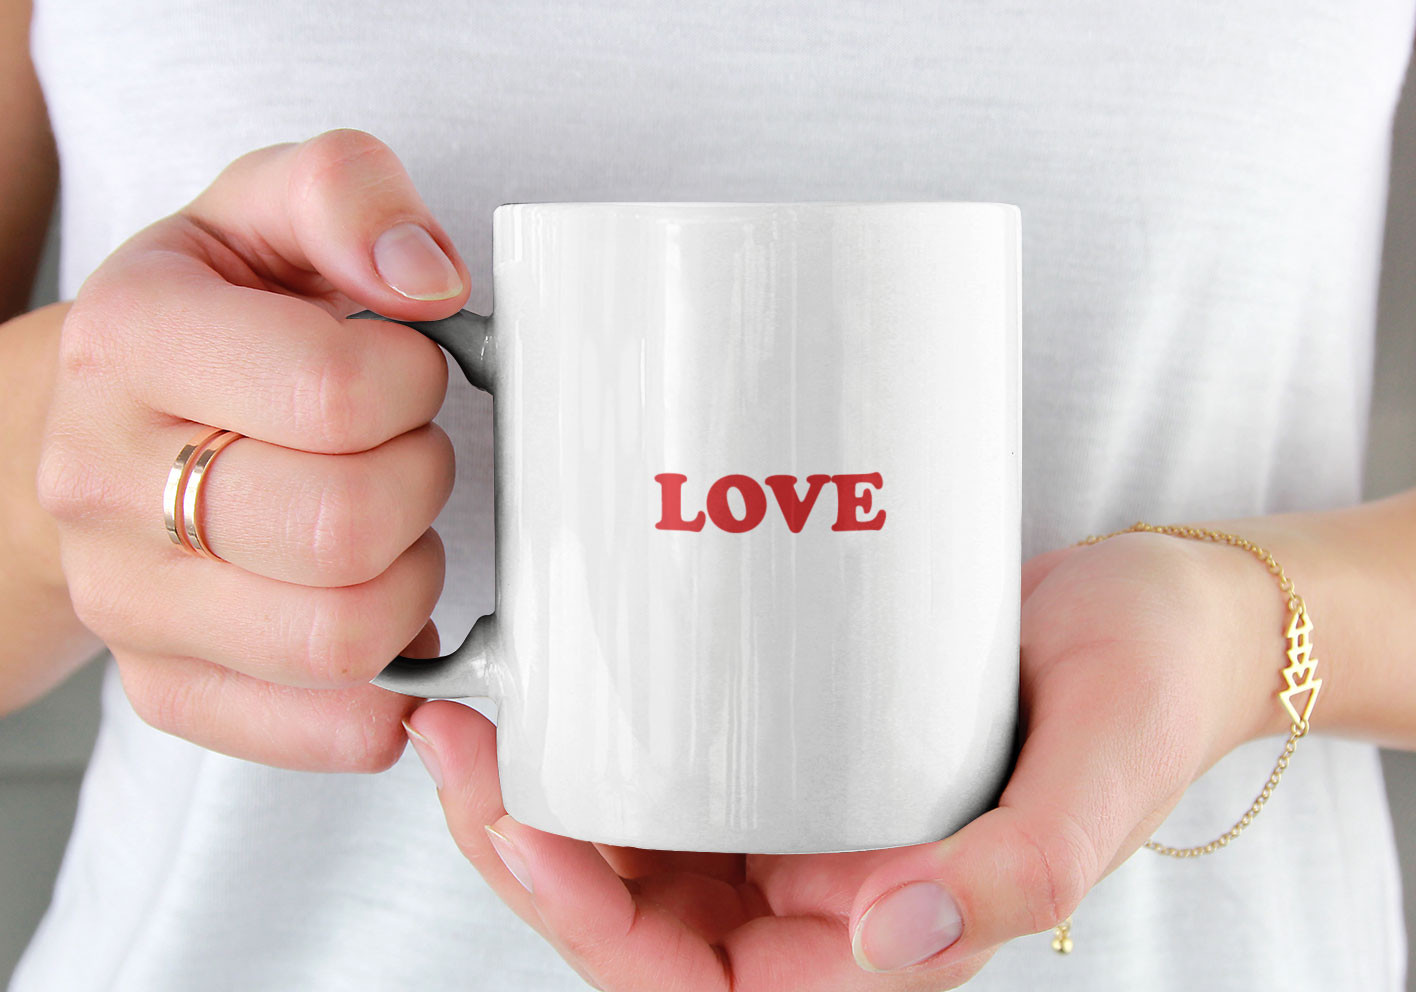 mug love